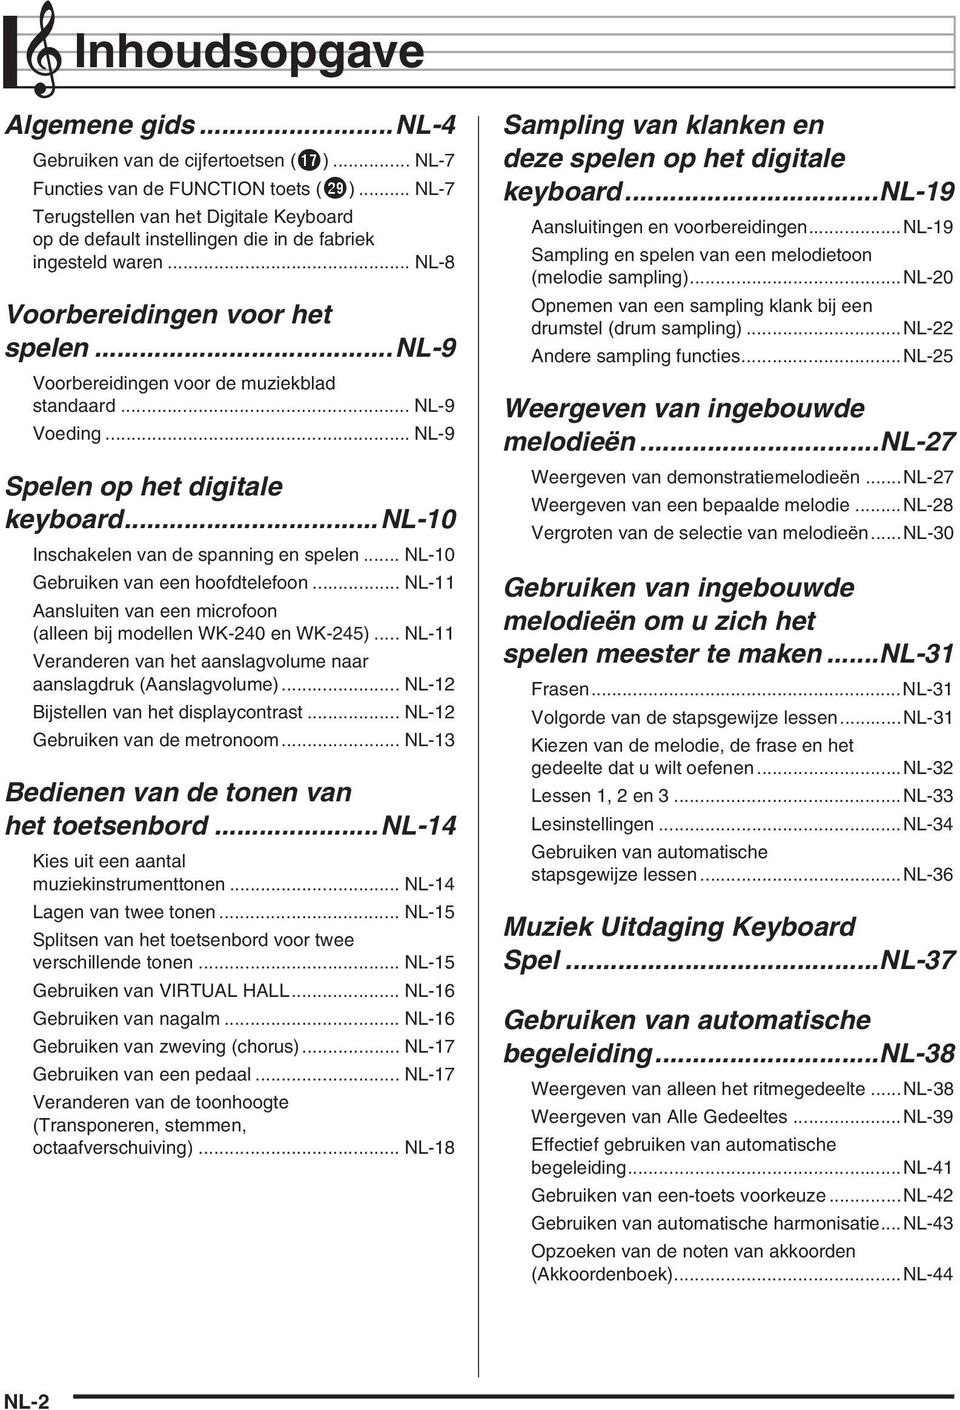 .. NL-9 Voeding... NL-9 Spelen op het digitale keyboard...nl-10 Inschakelen van de spanning en spelen... NL-10 Gebruiken van een hoofdtelefoon.